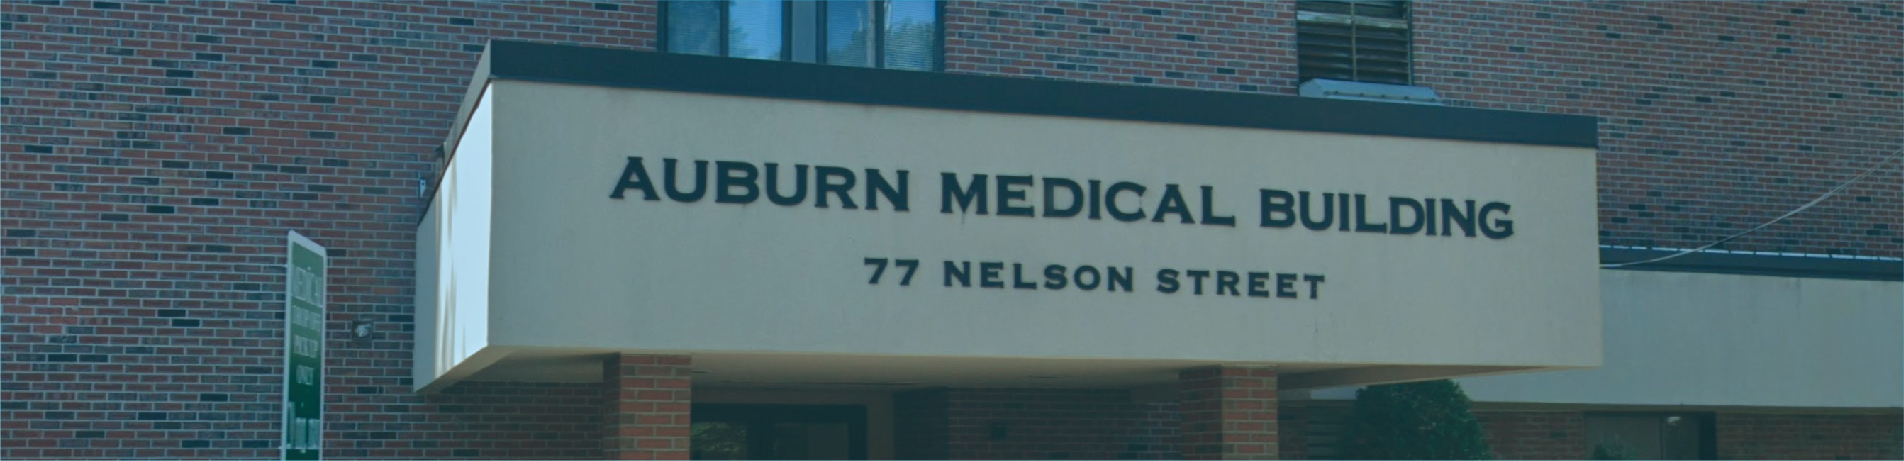 Auburn Medical Building 77 Nelson Street